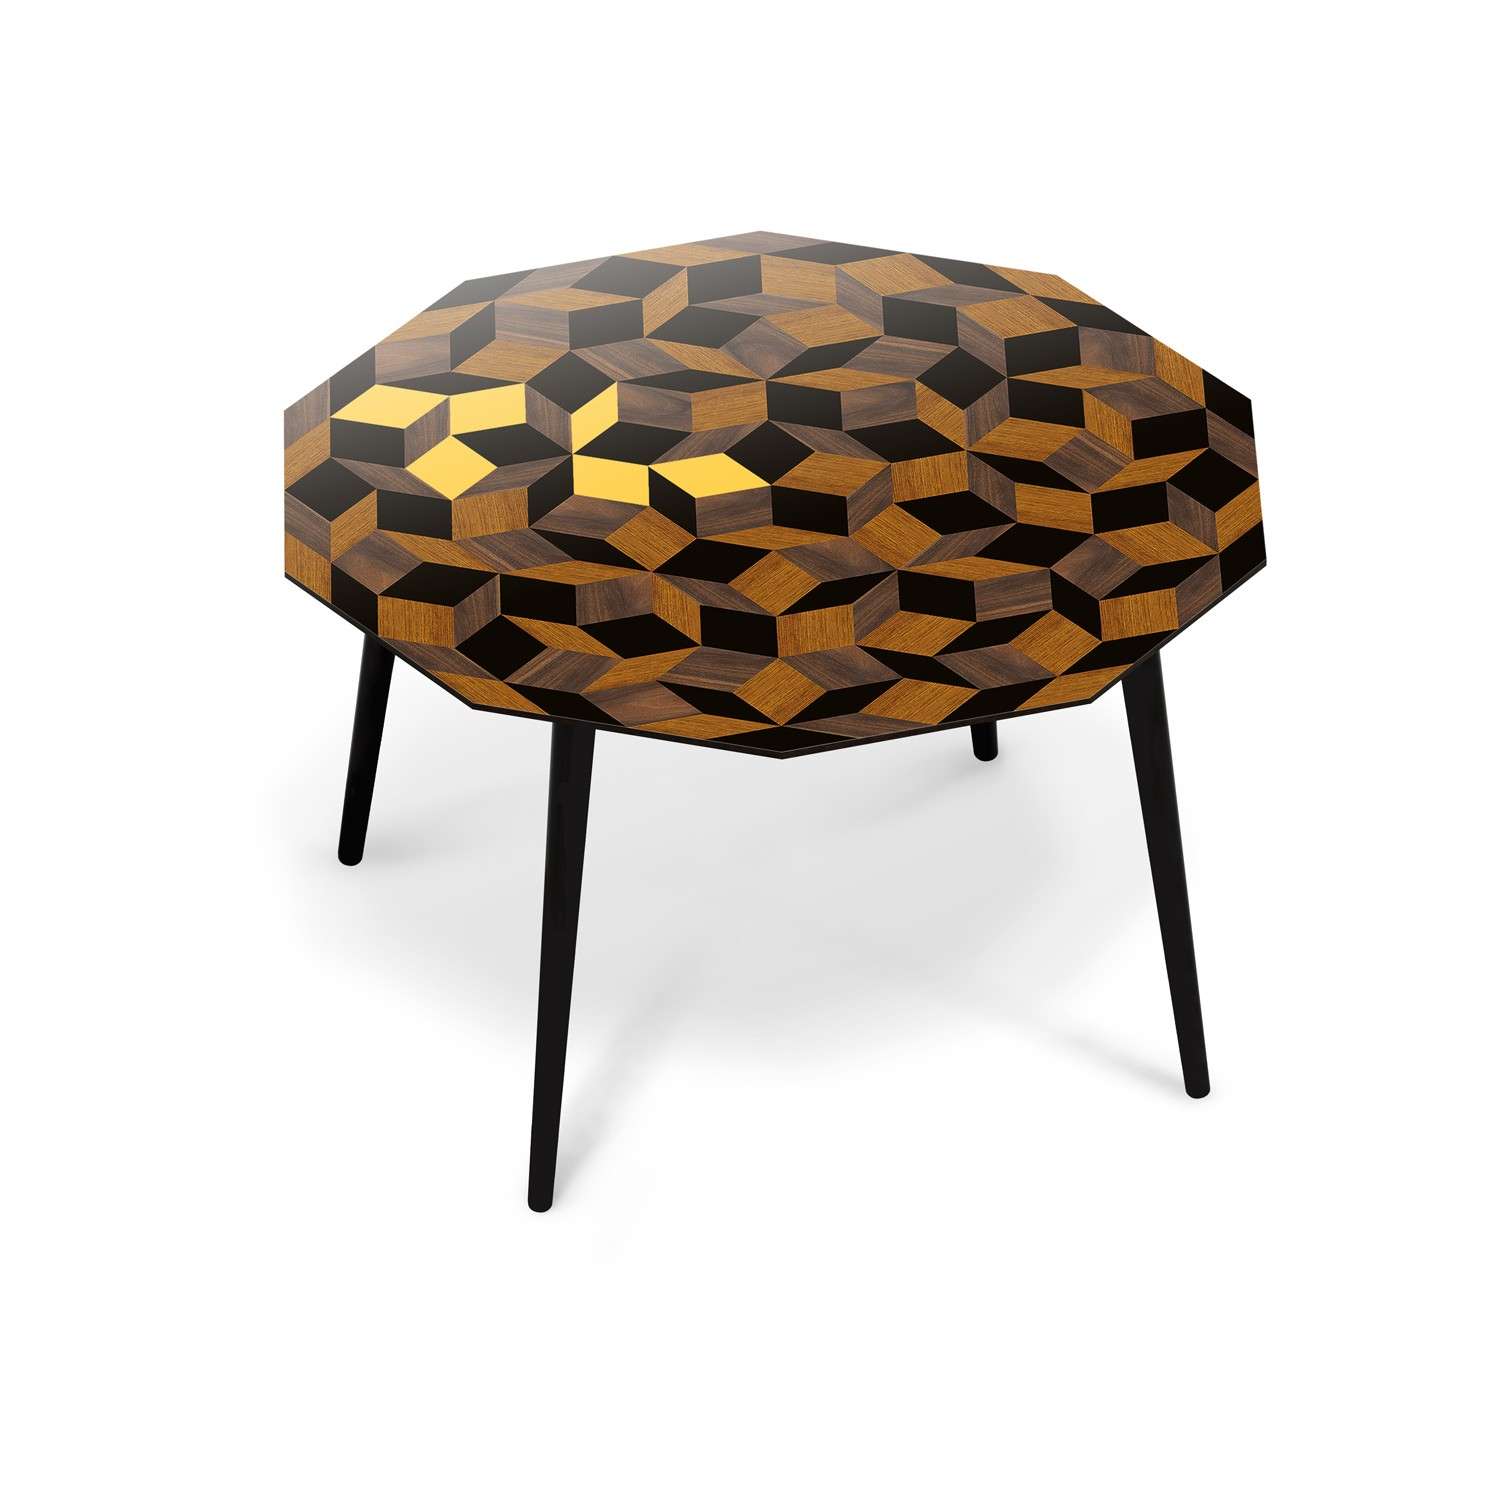 Table à manger ronde Penrose Summer Wood, bois et jaune Design IchetKar édition Bazartherapy